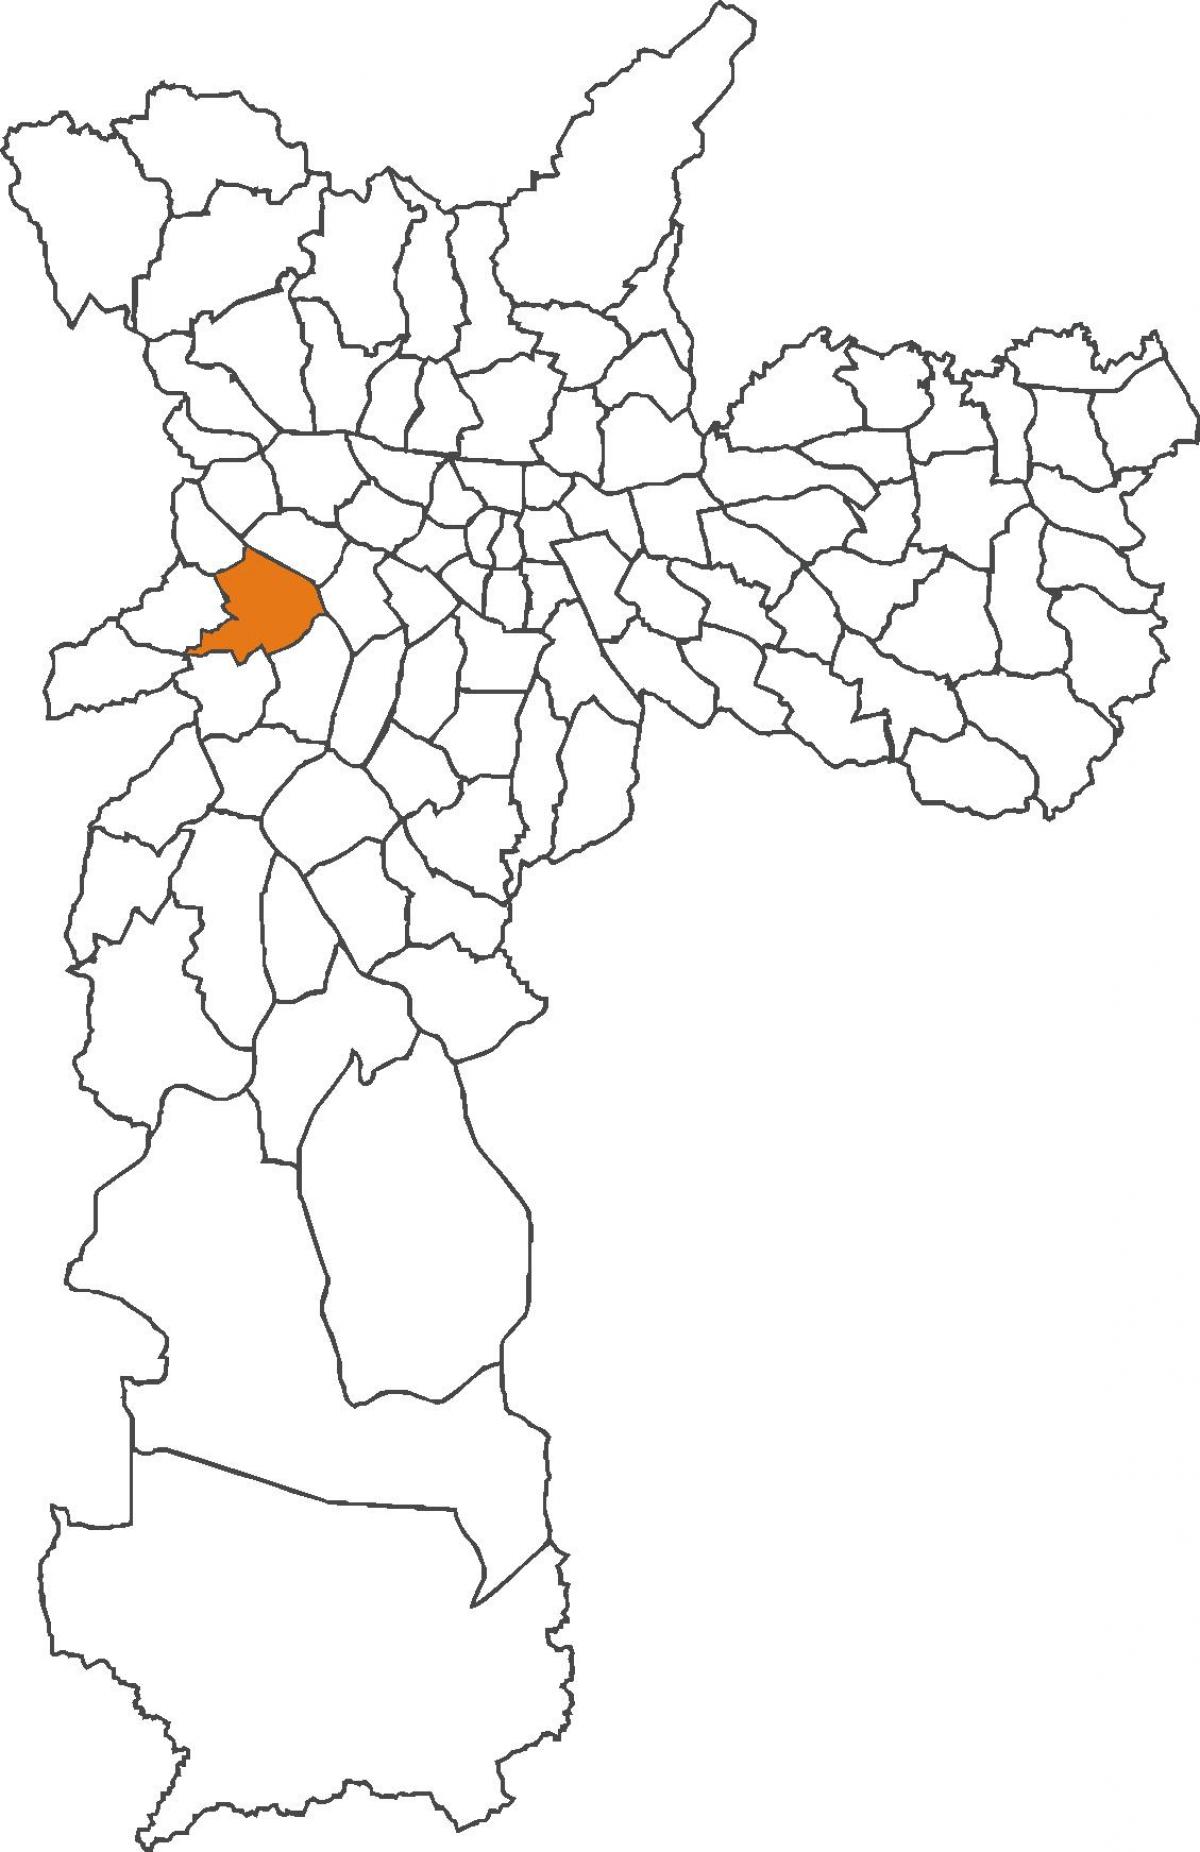 แผนที่ของ Butantã เขต